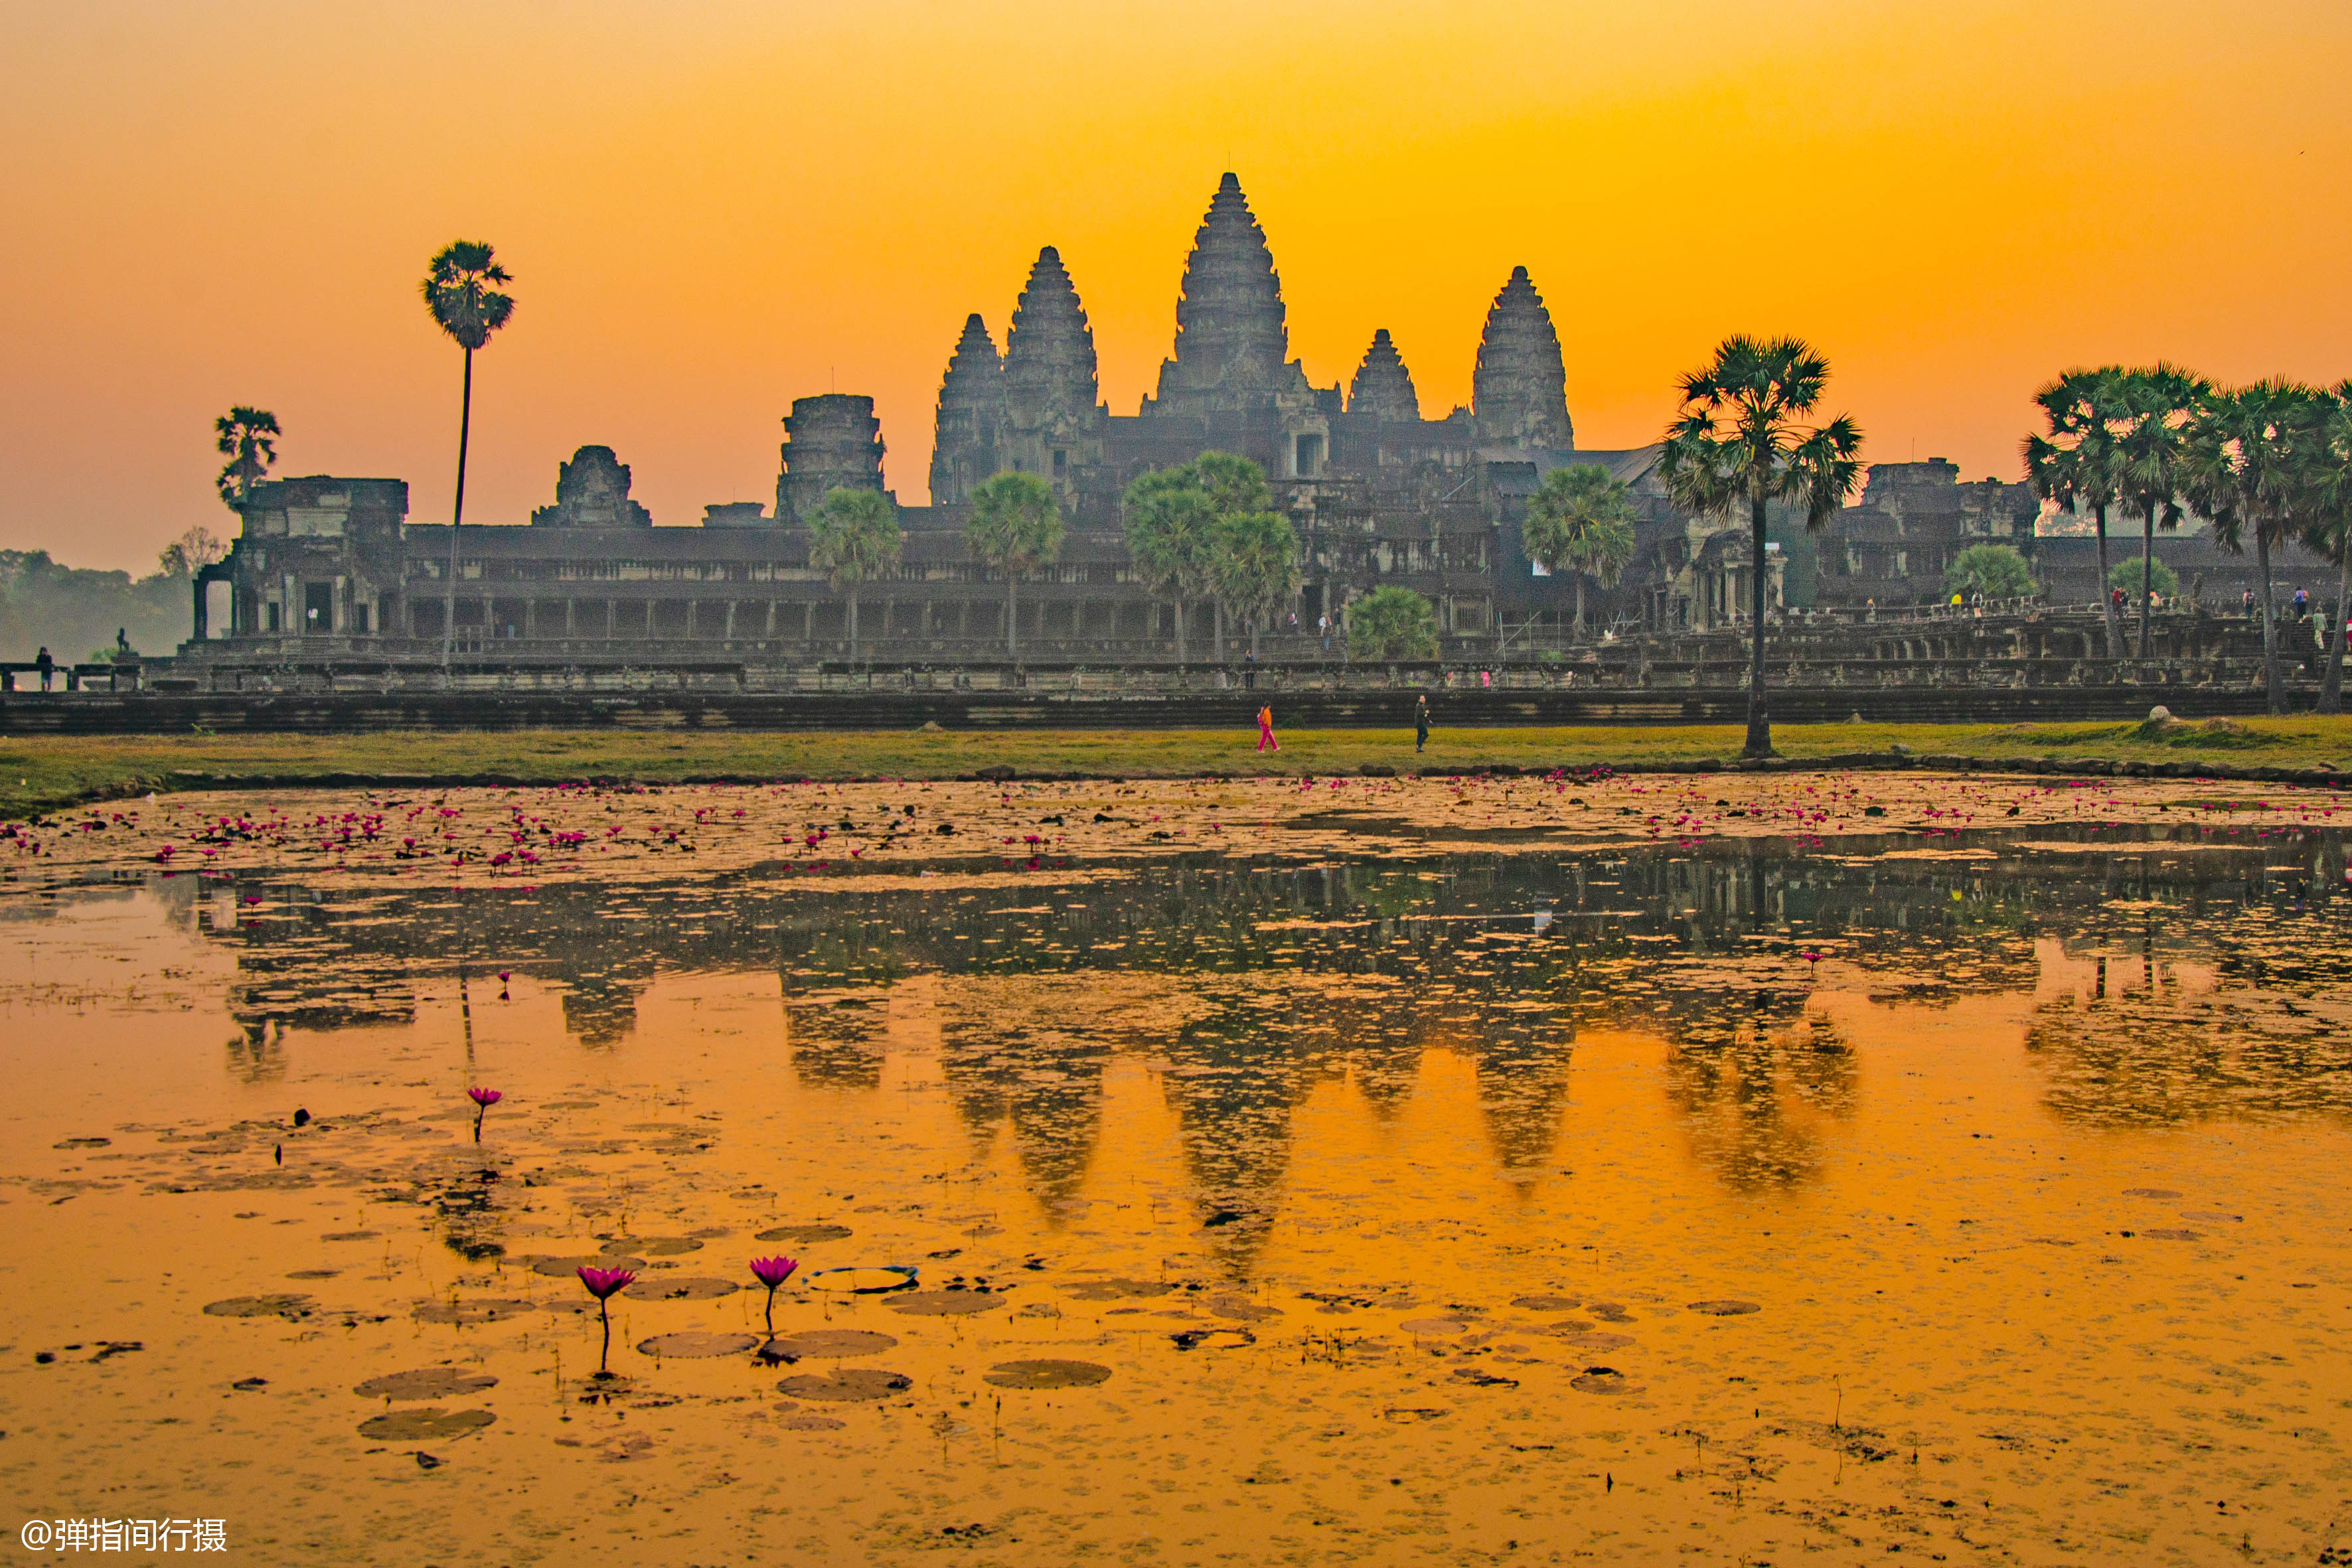 柬埔寨吴哥窟最美日出:当橙黄晨光笼罩古老遗迹,美得难以言表